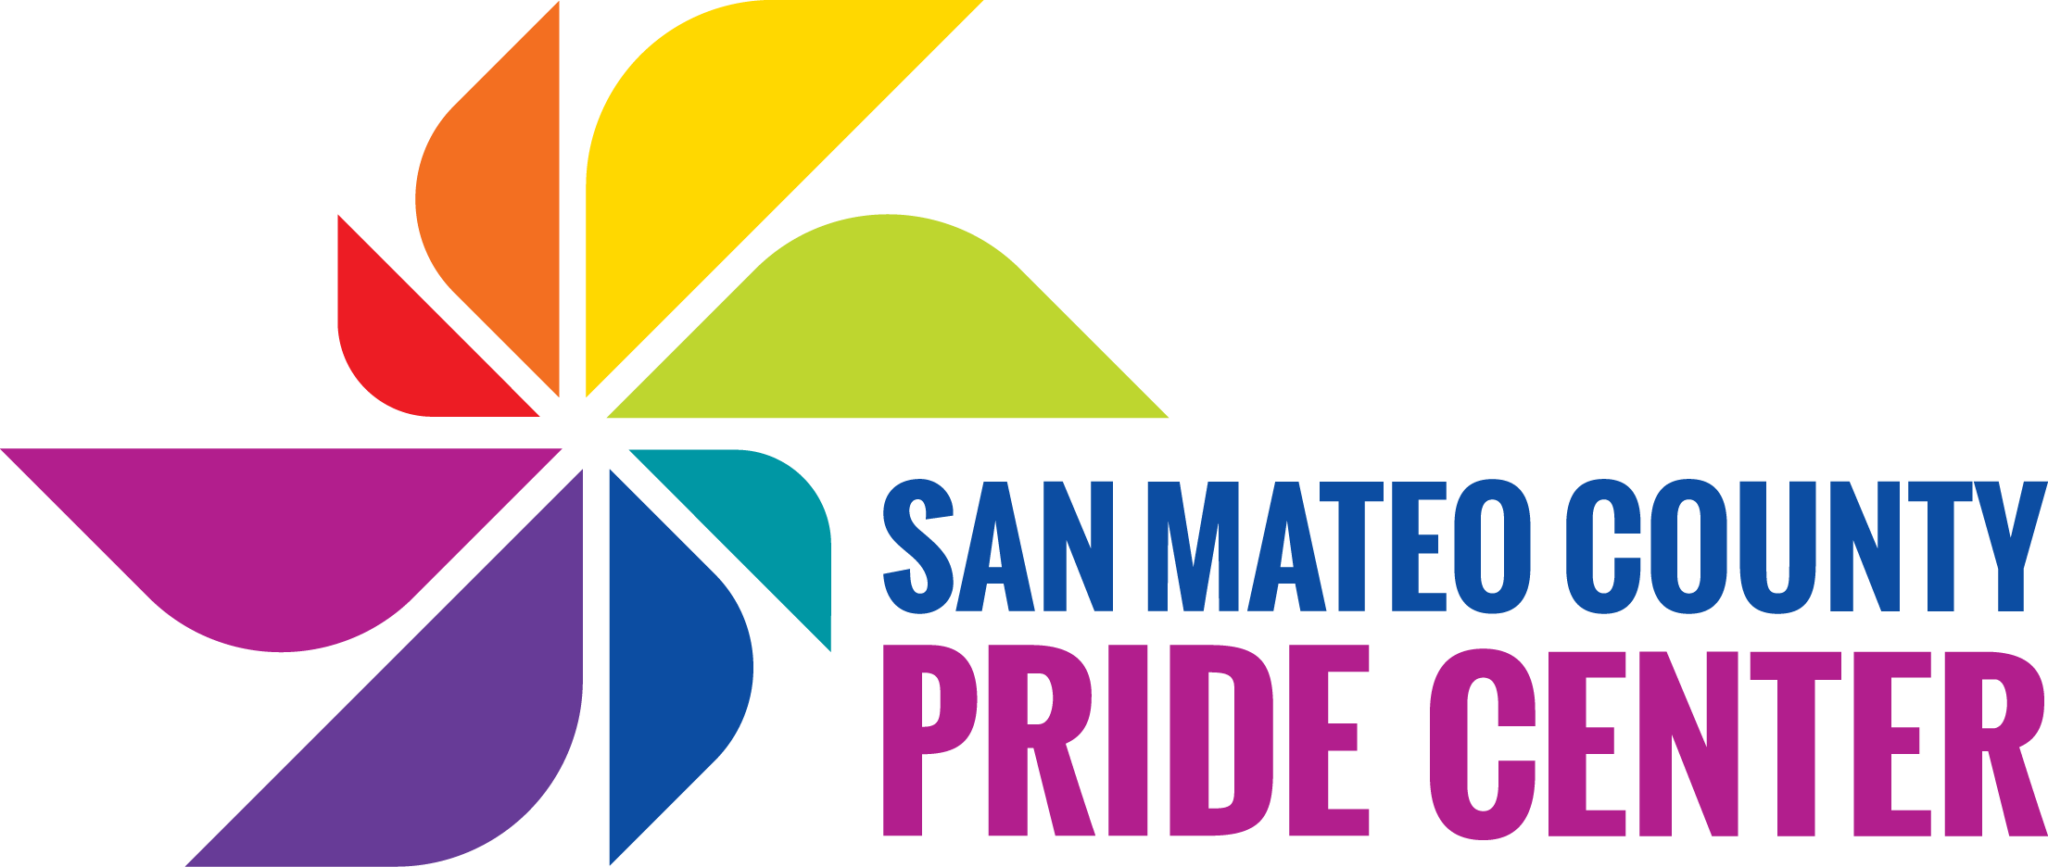 San Mateo County Pride Center